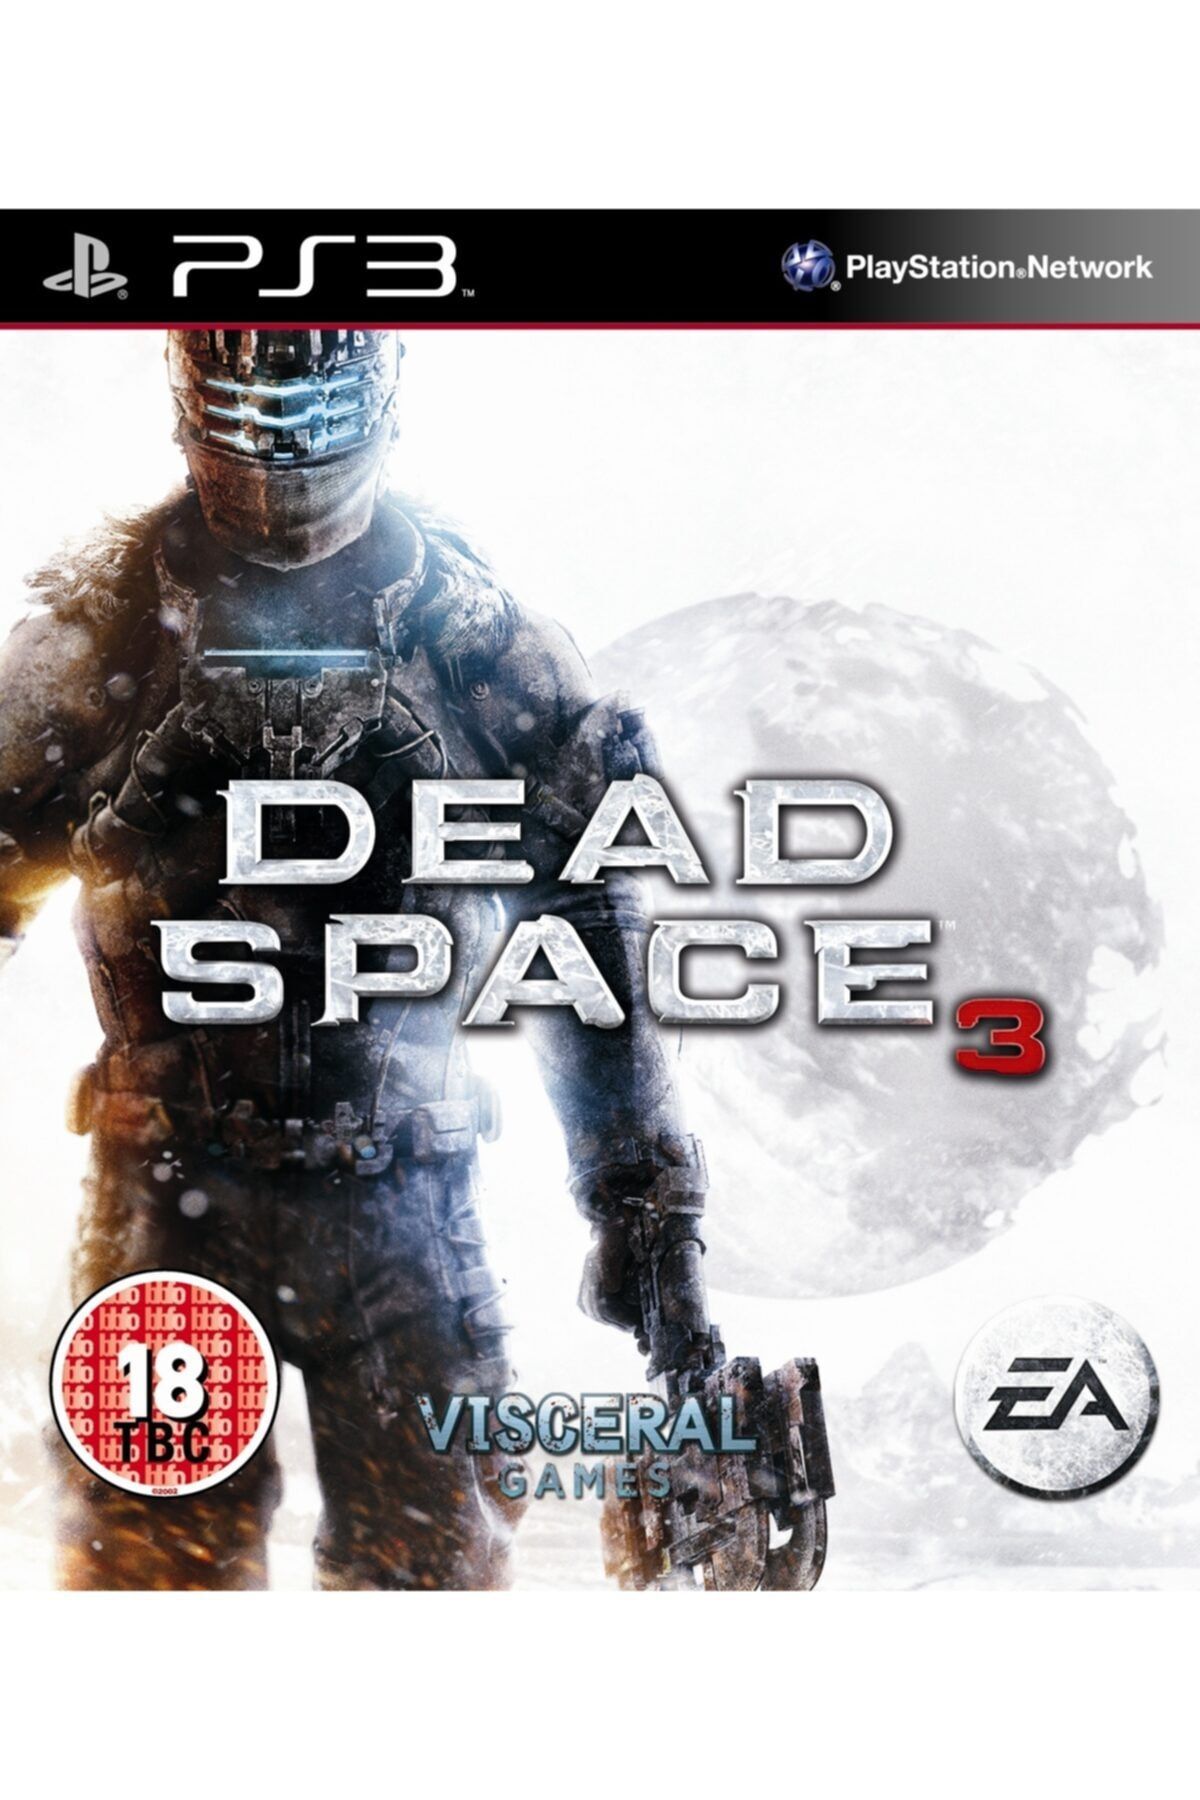 EA Games Ps3 Dd Space 3